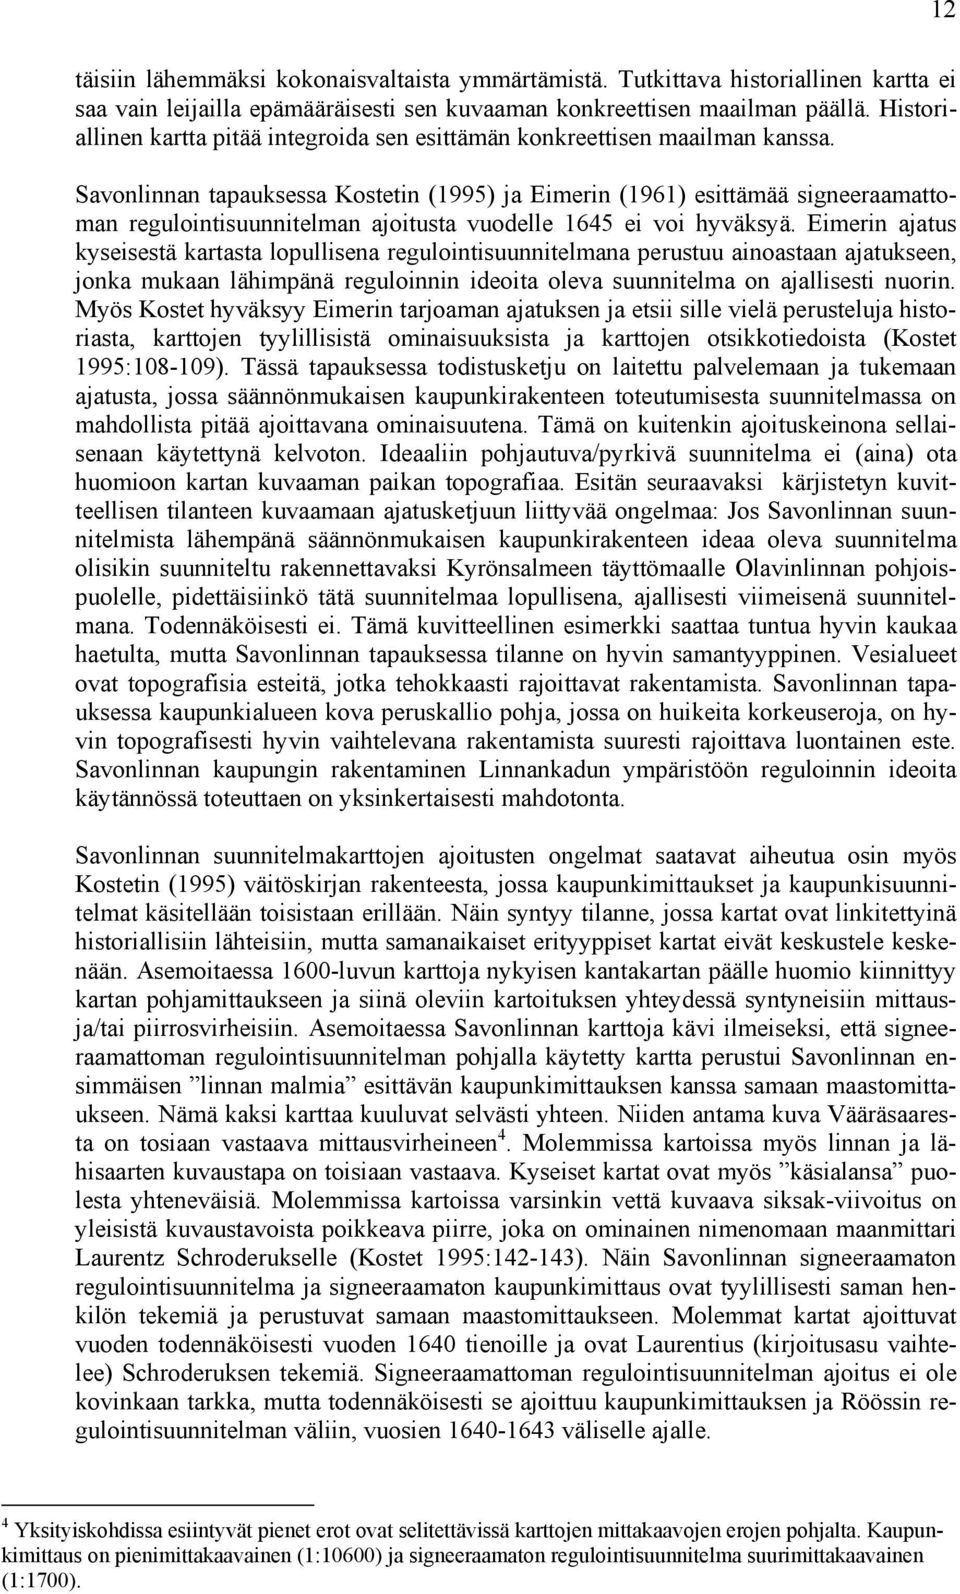 Savonlinnan tapauksessa Kostetin (1995) ja Eimerin (1961) esittämää signeeraamattoman regulointisuunnitelman ajoitusta vuodelle 1645 ei voi hyväksyä.